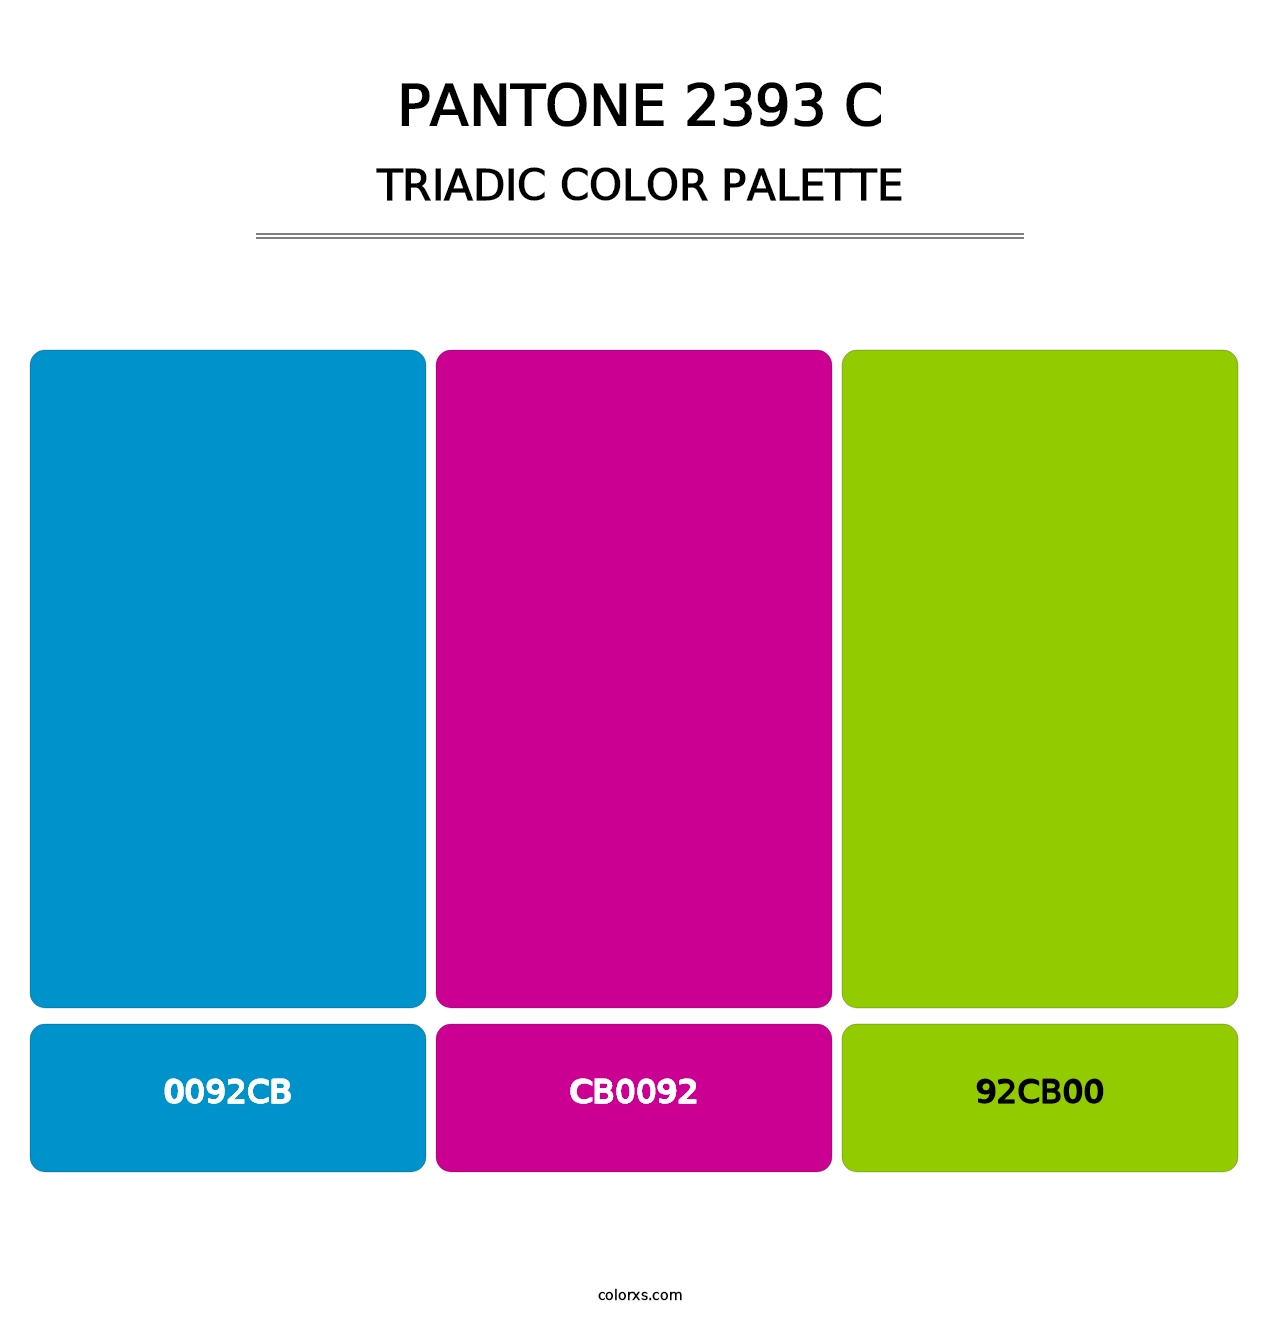 PANTONE 2393 C - Triadic Color Palette